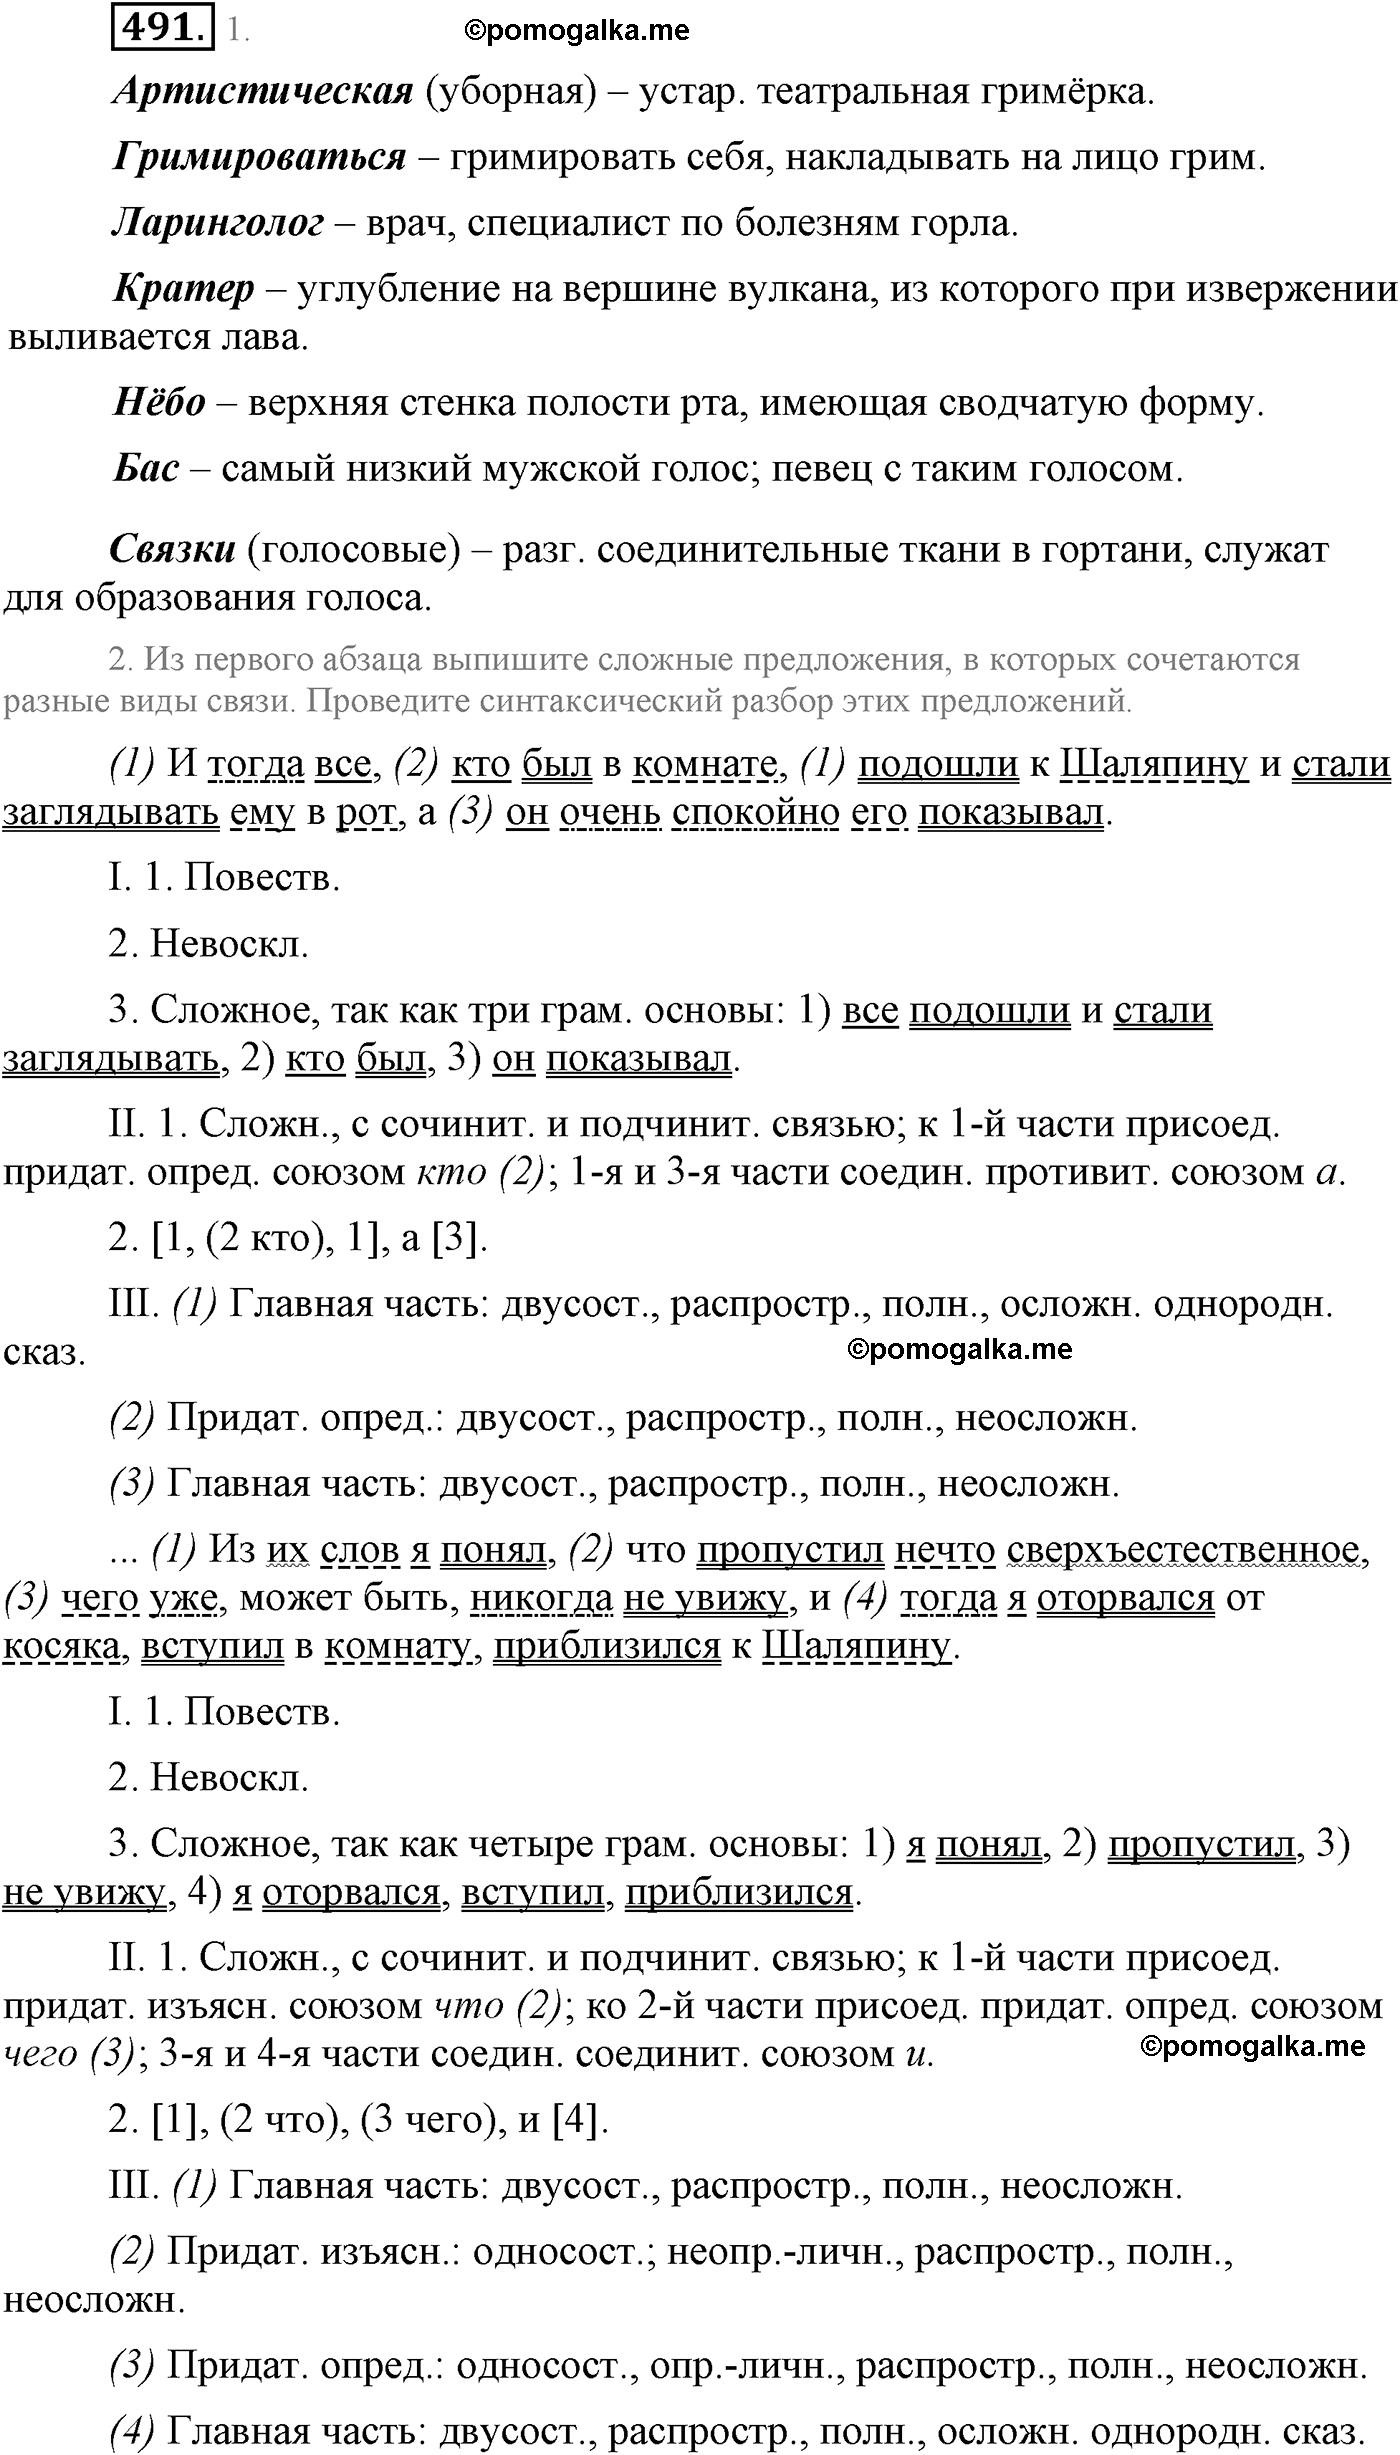 упражнение №491 русский язык 9 класс Львова